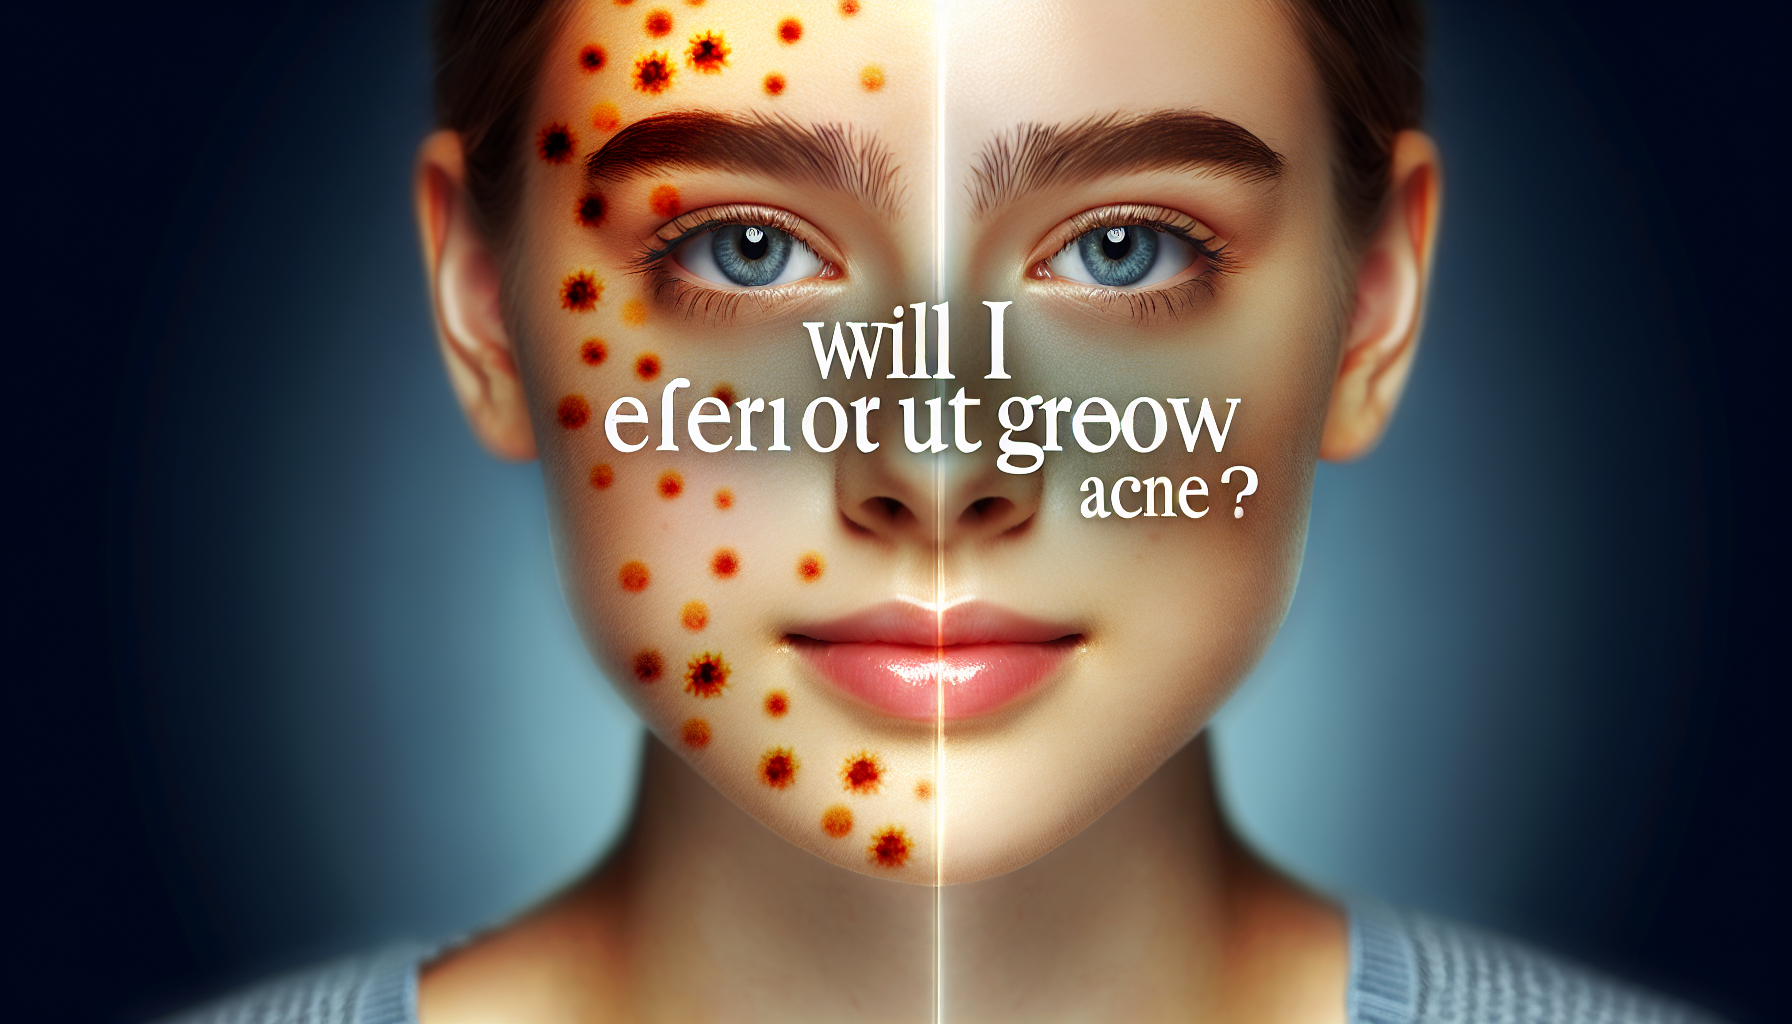 Will I Ever Outgrow Acne?